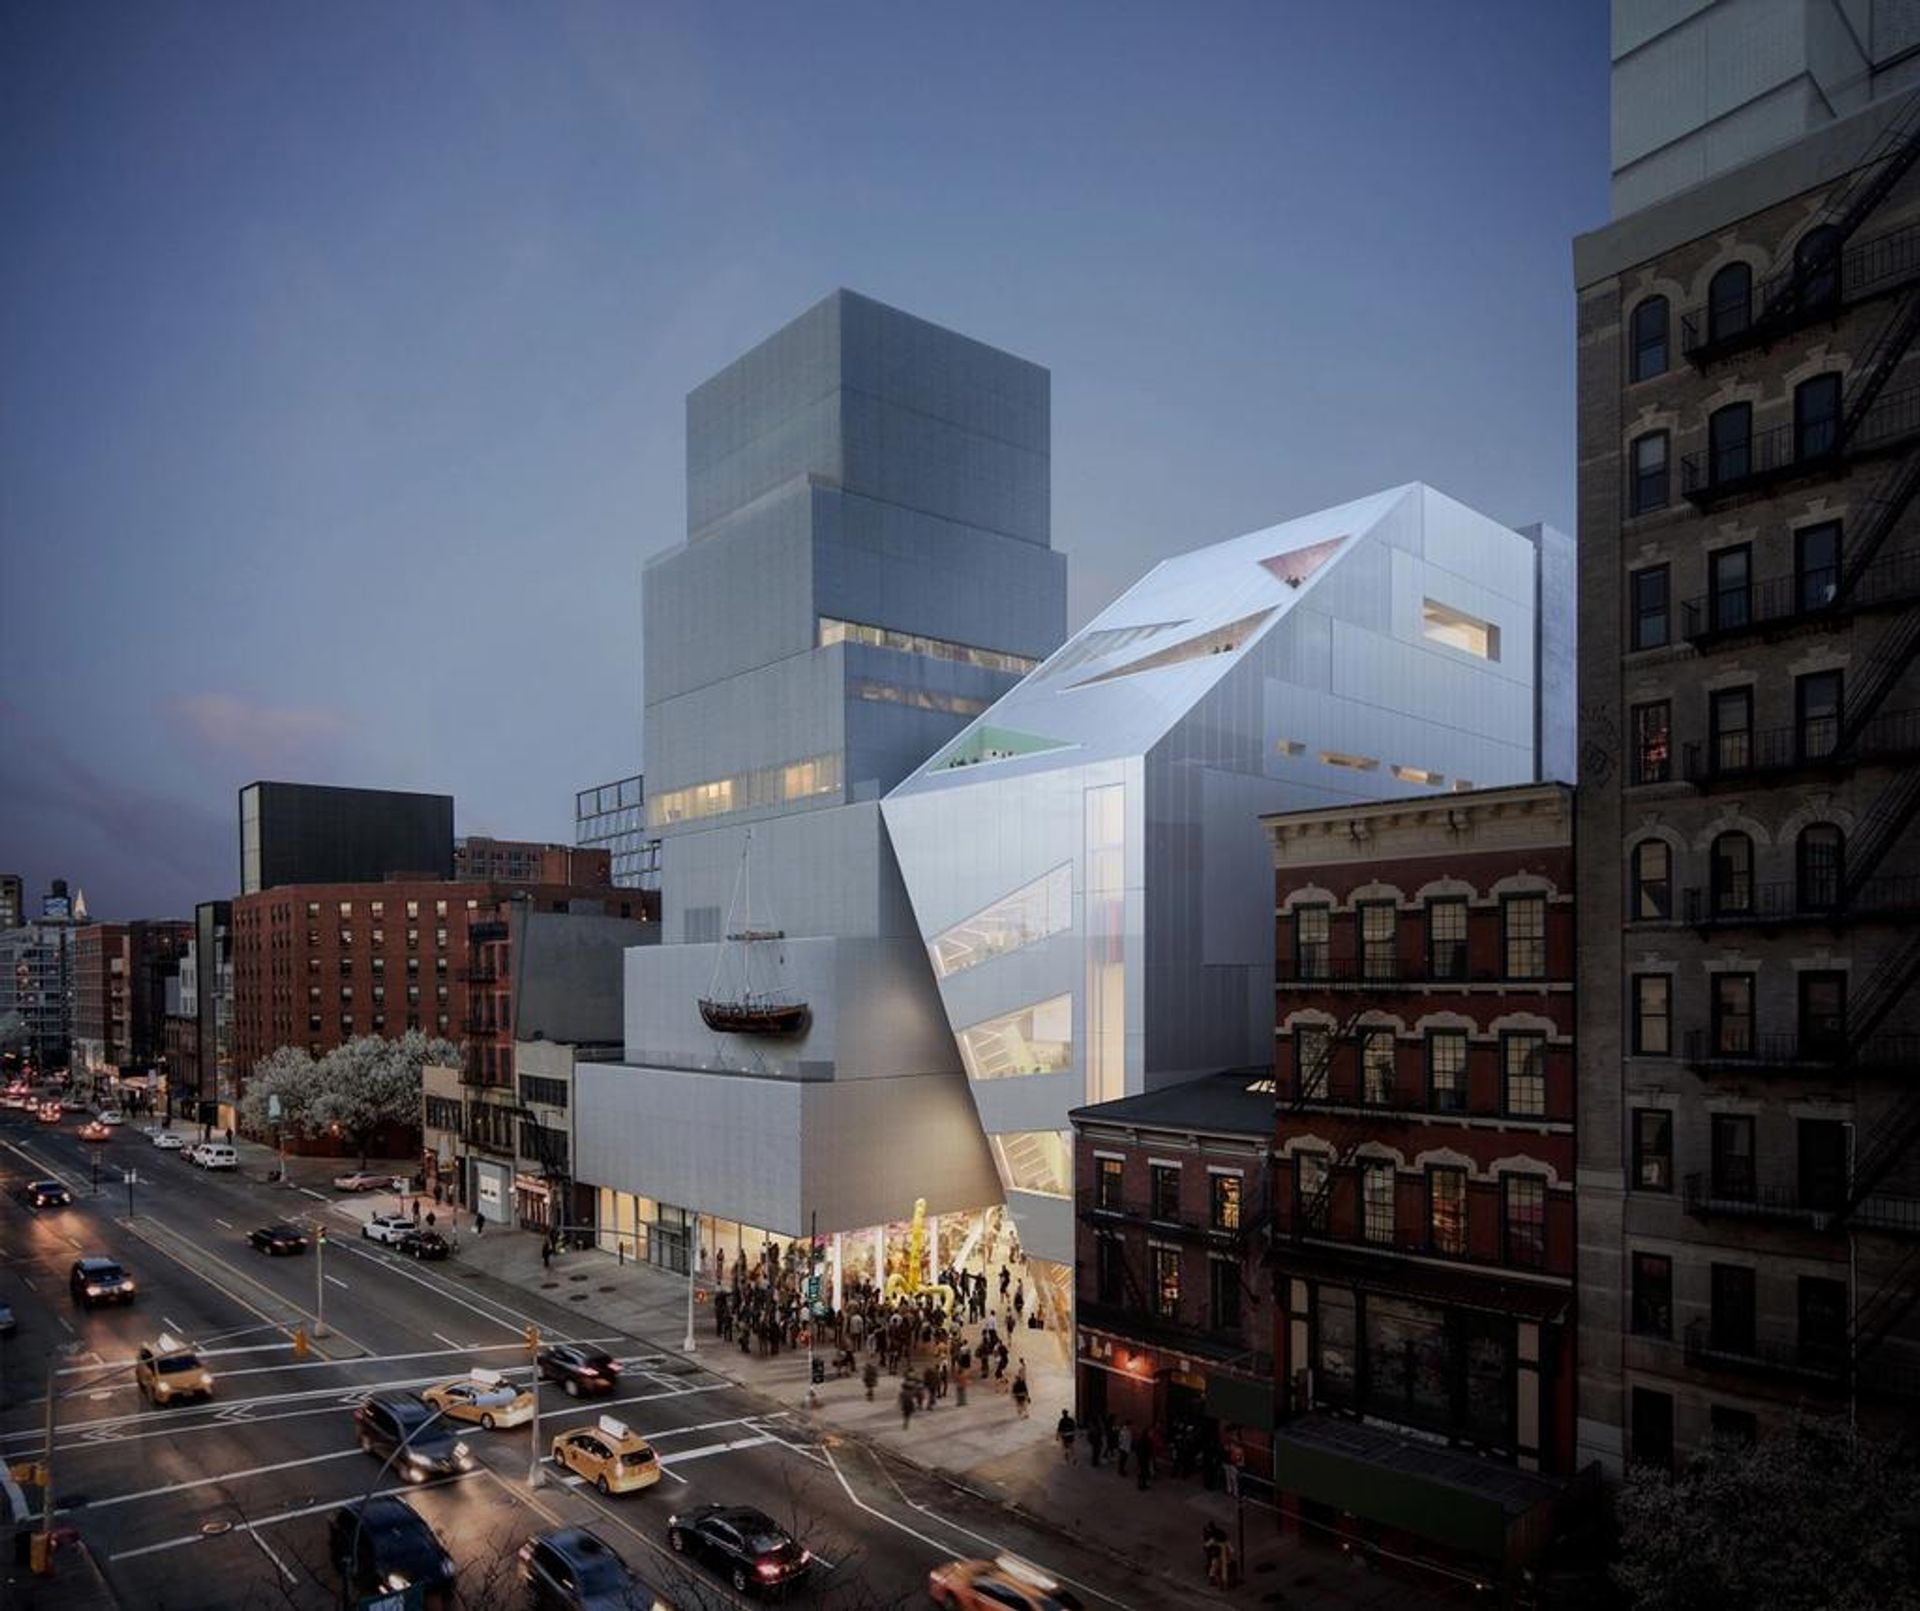 המוזיאון החדש על באורי בניו יורק עם עיבוד של התוספת המתוכננת שלו מימין 

צילום: OMA/Bloomimages.de